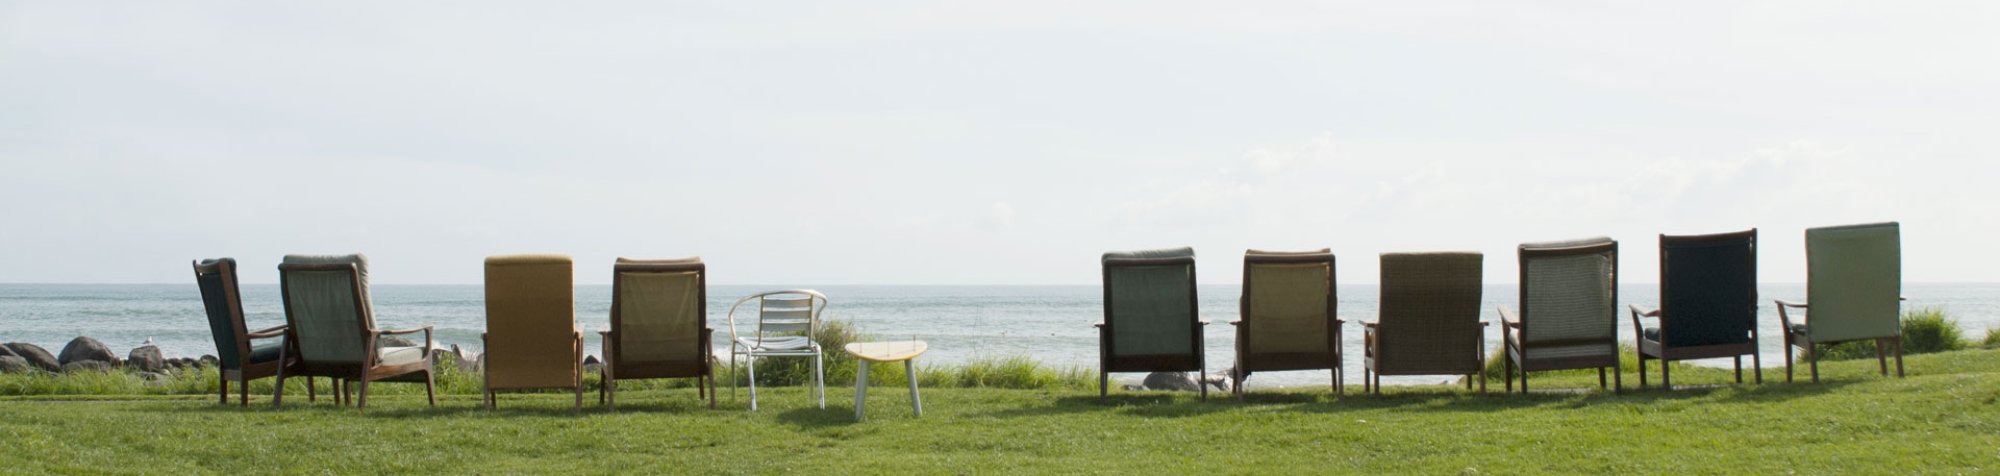 Auf einer Wiese vor dem Meer sind mehrere Sessel in einer Reihe aufgestellt. Wenn man sich hineinsetzen würde, hätte man einen Blick auf das Meer.